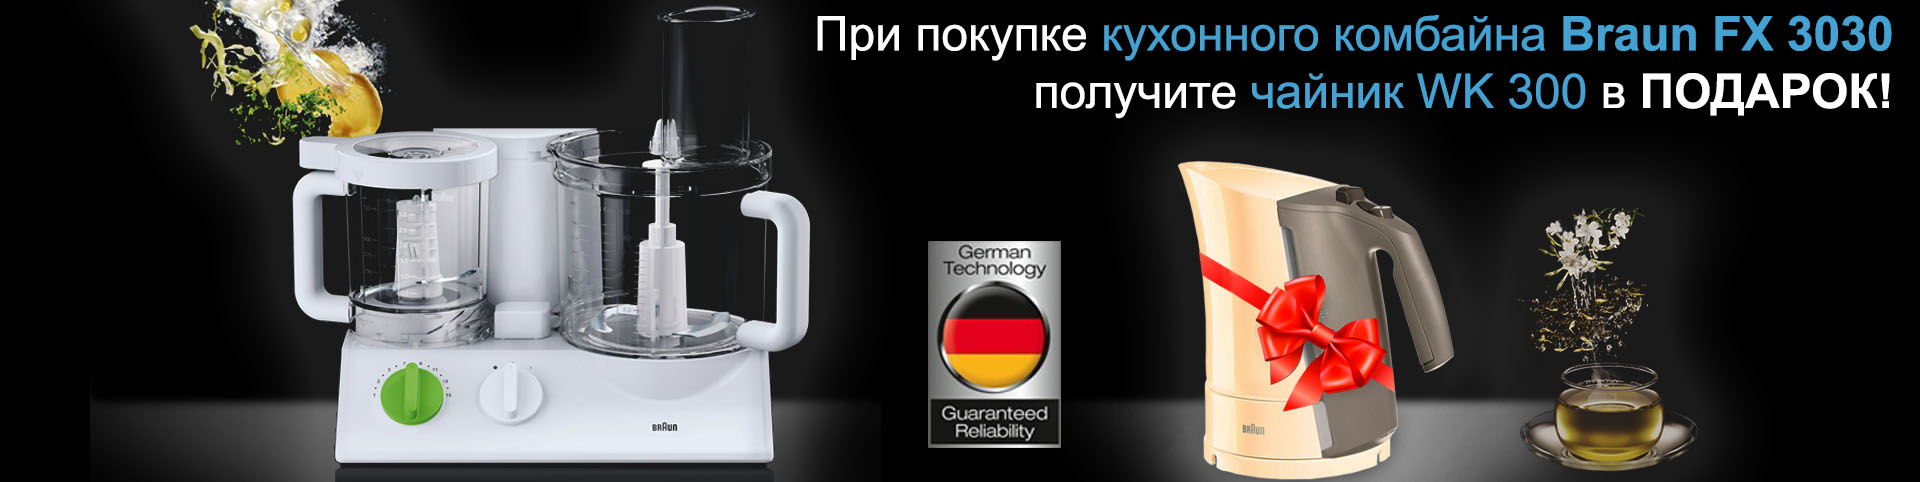 Покупая кухонный комбайн BRAUN FX 3030 Tribute, вы получите в подарок электрочайник WK 300 cream!